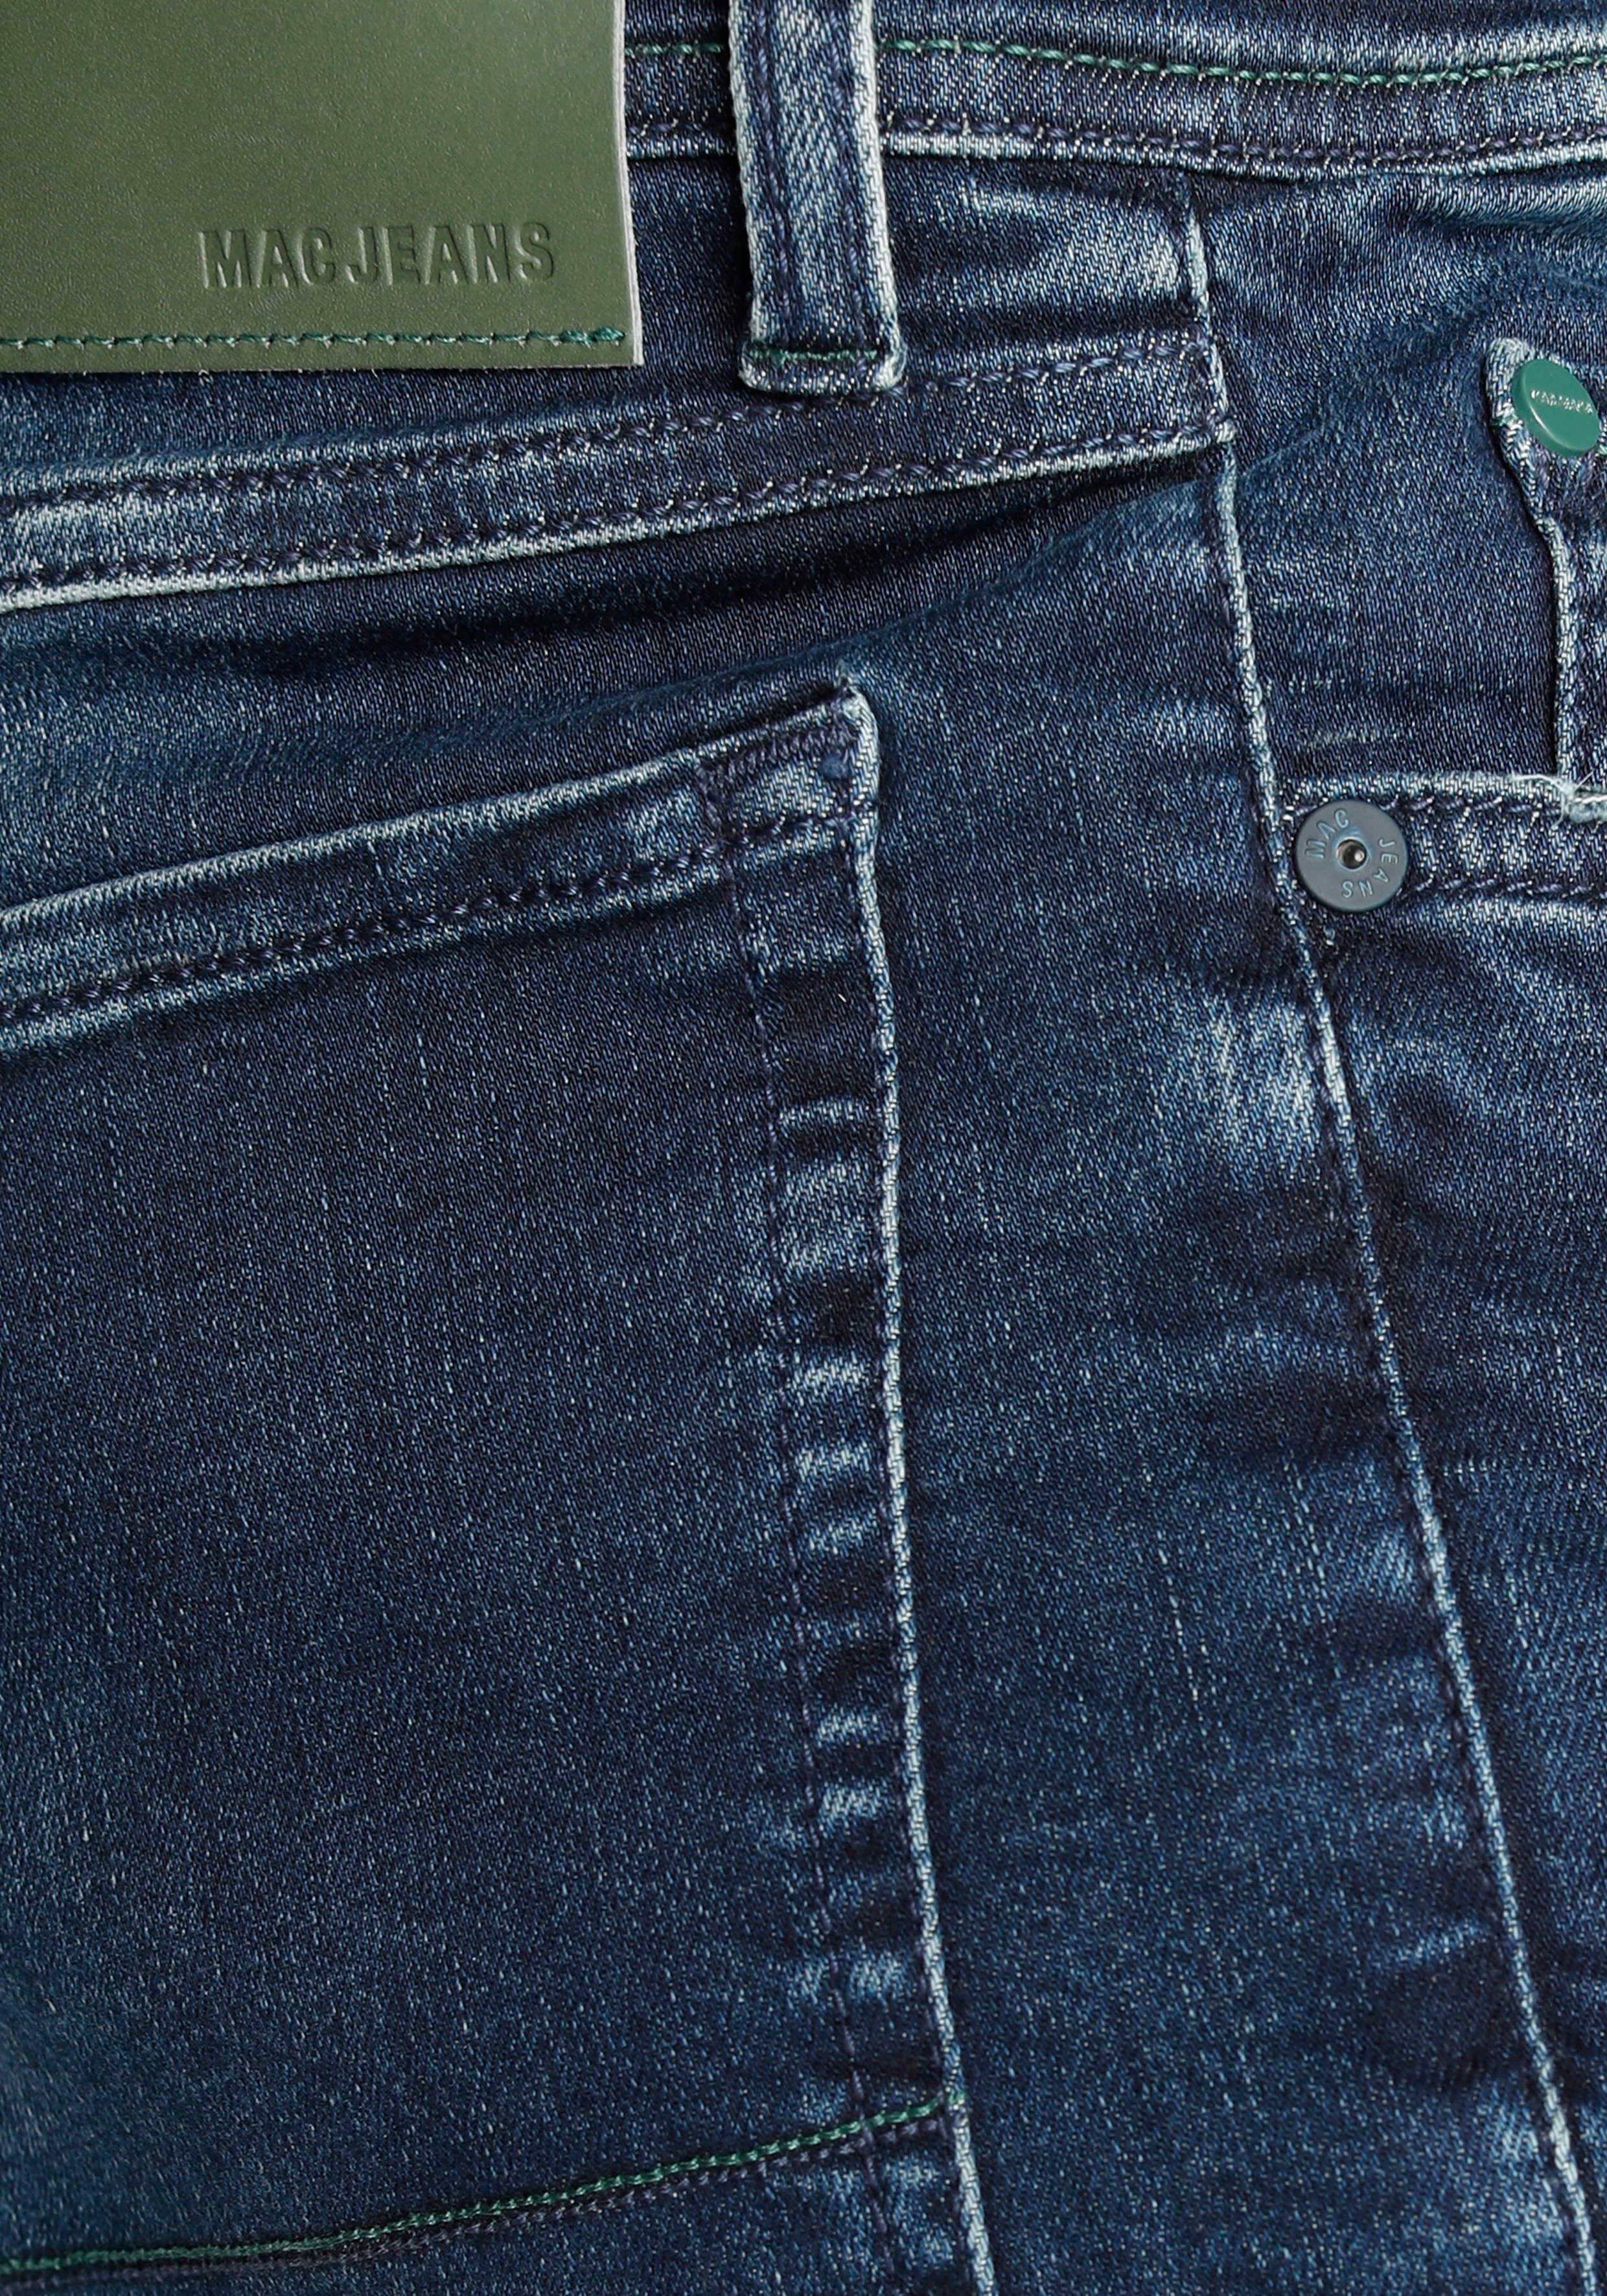 Straight-Jeans dark super blue MAC elastisch Flexx-Driver used authentic